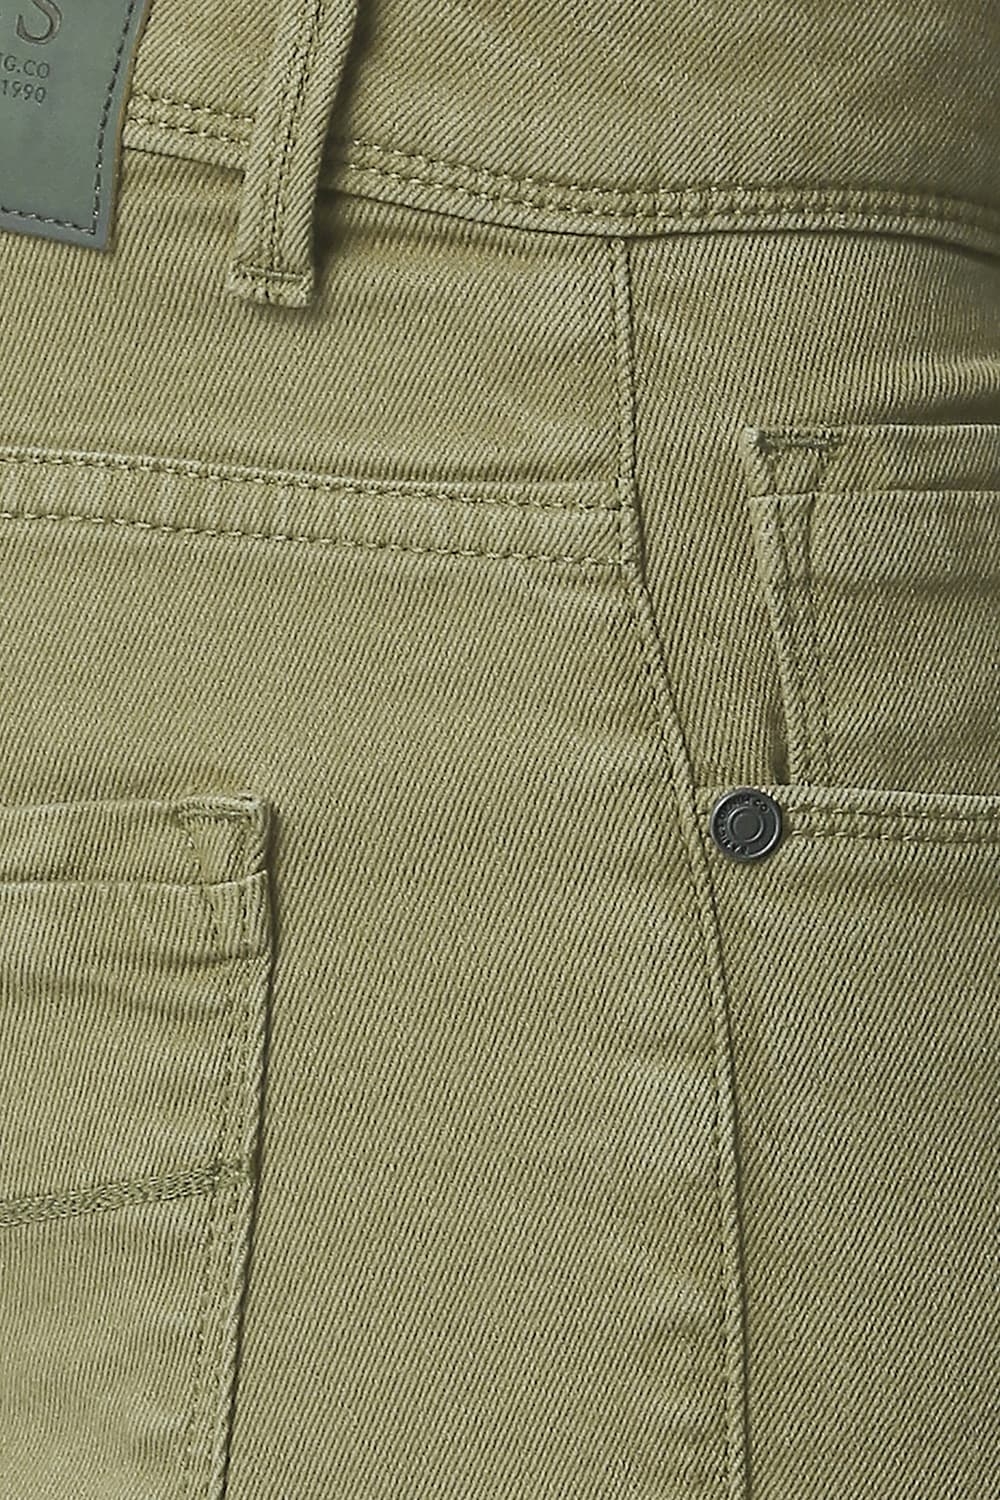 Basics | Men's Olive Cotton Blend Solid Jeans 2